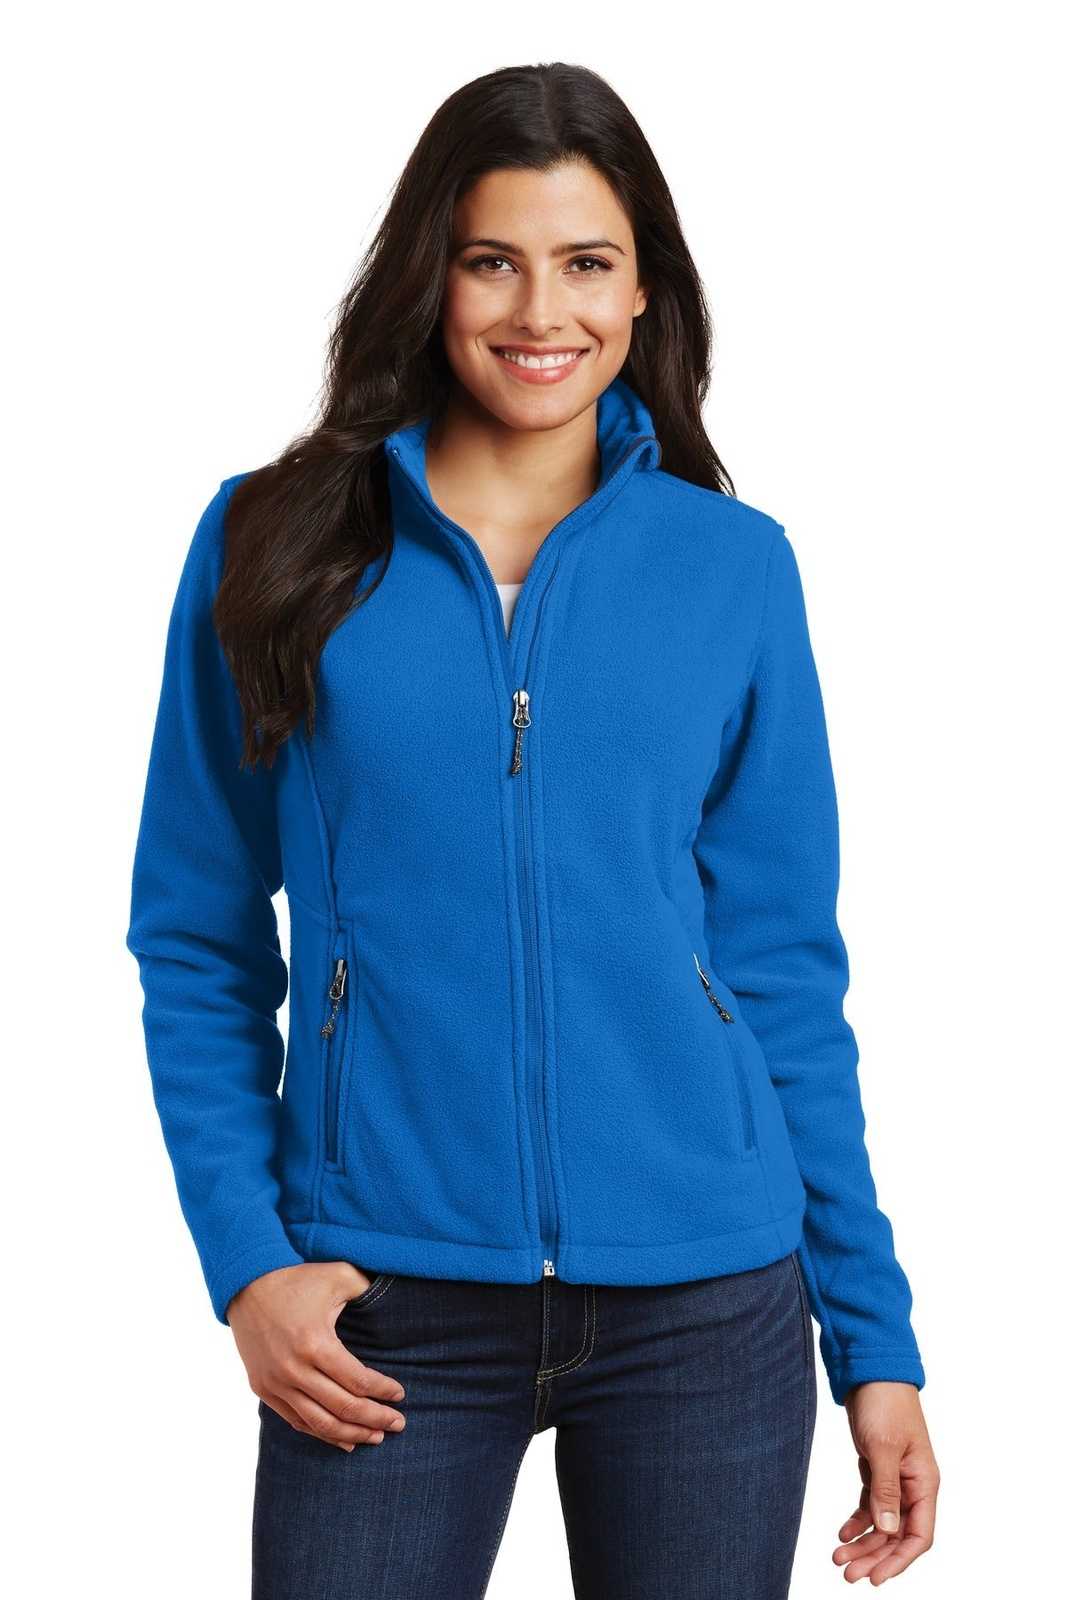 Port Authority L217 Ladies Value Fleece Jacket - Skydiver Blue - HIT a Double - 1